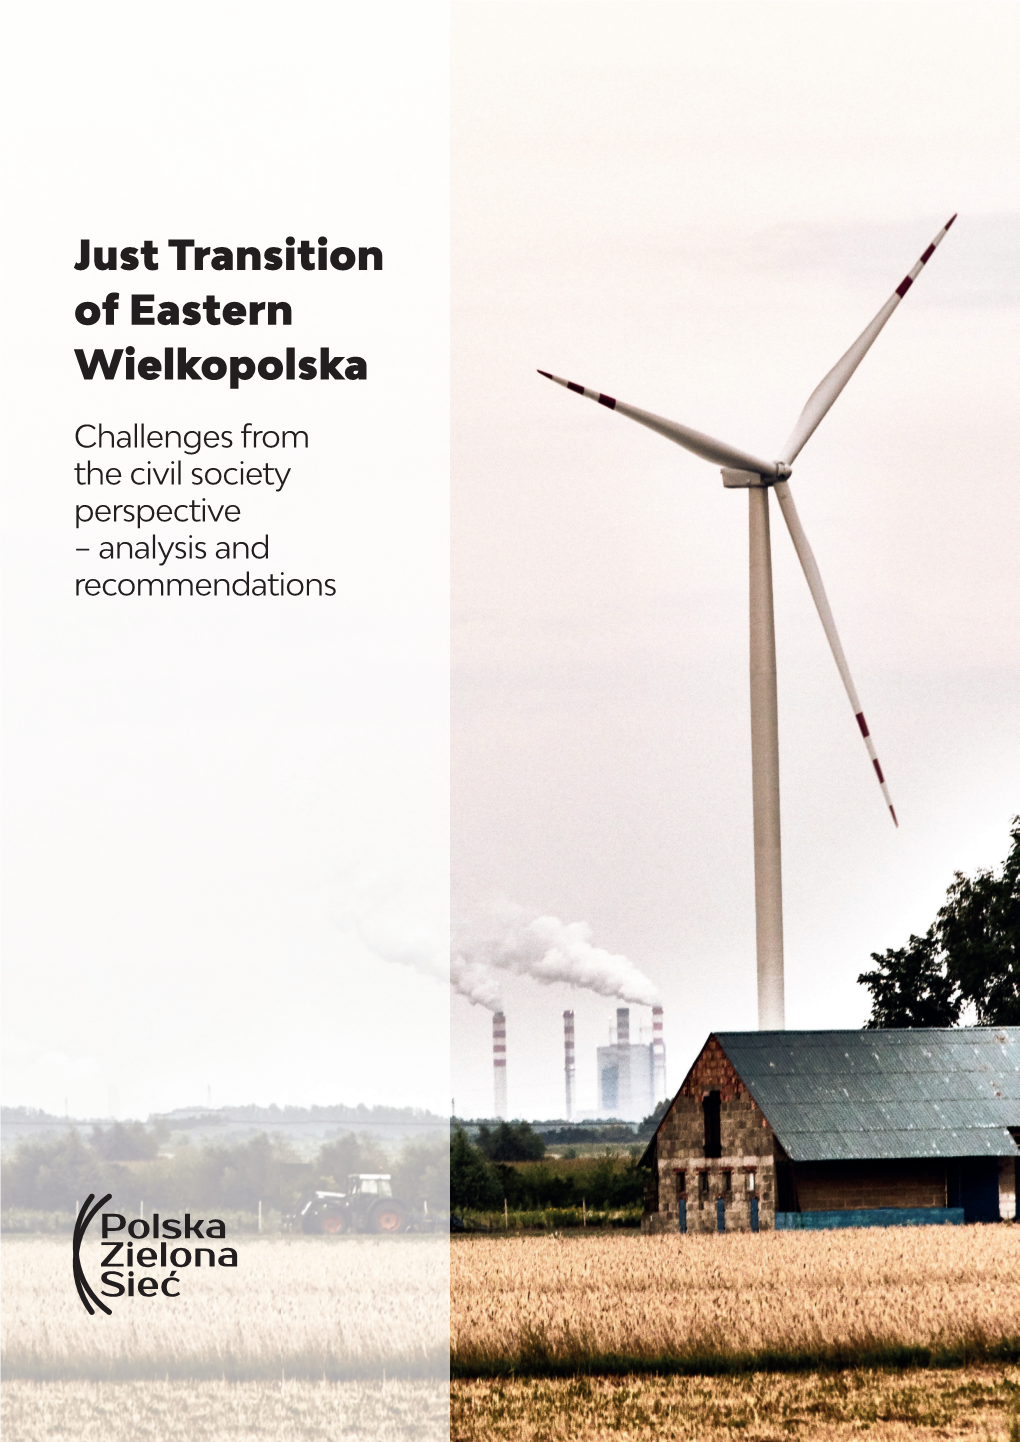 Just Transition of Eastern Wielkopolska